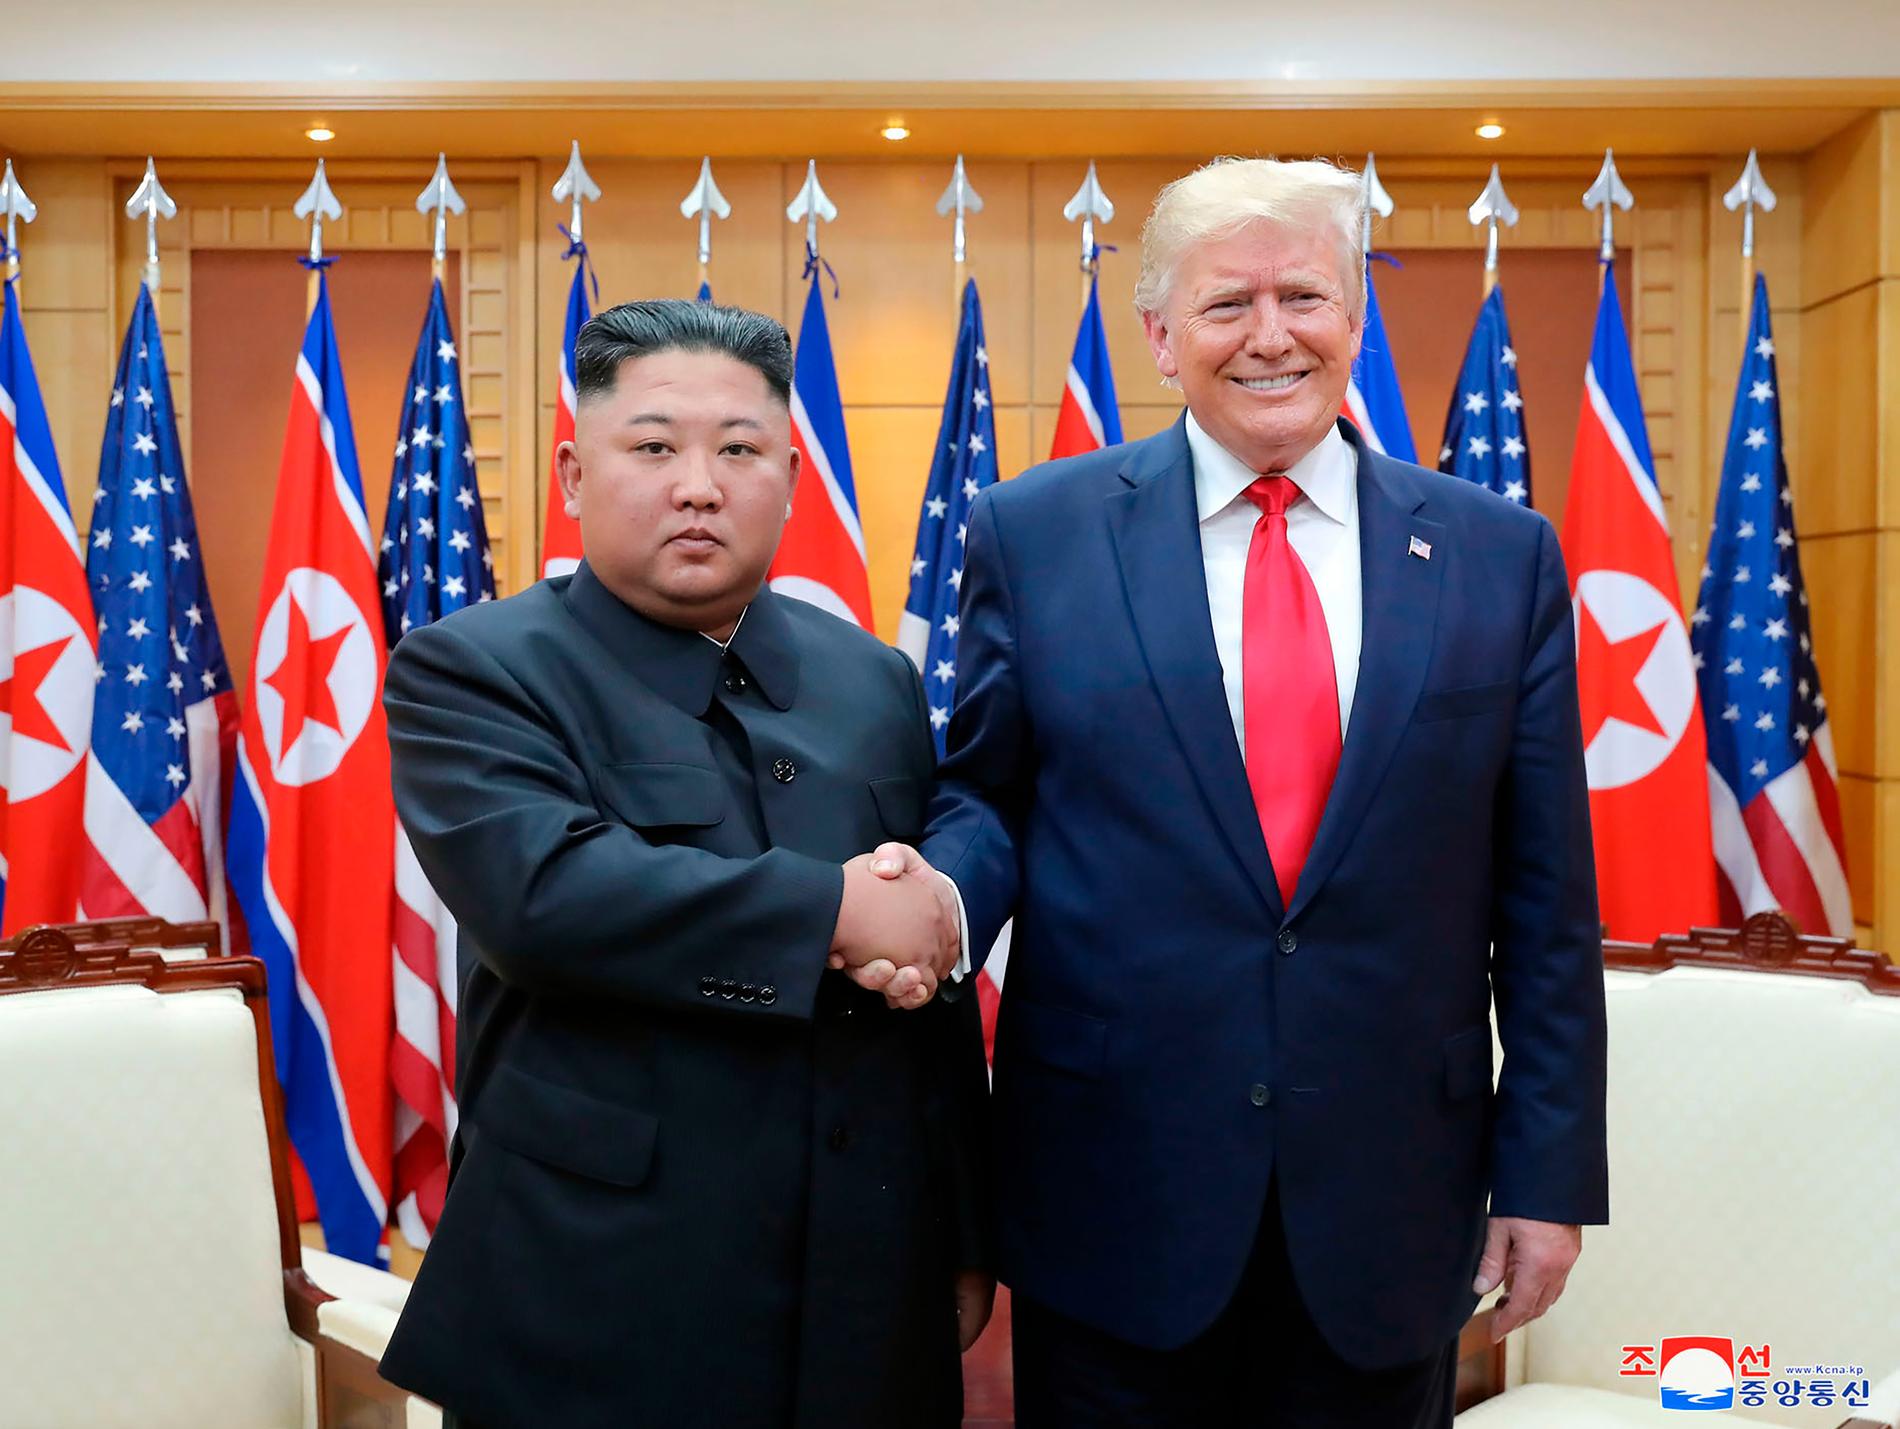 Kim Jong-un och Donald Trump i Nordkorea.